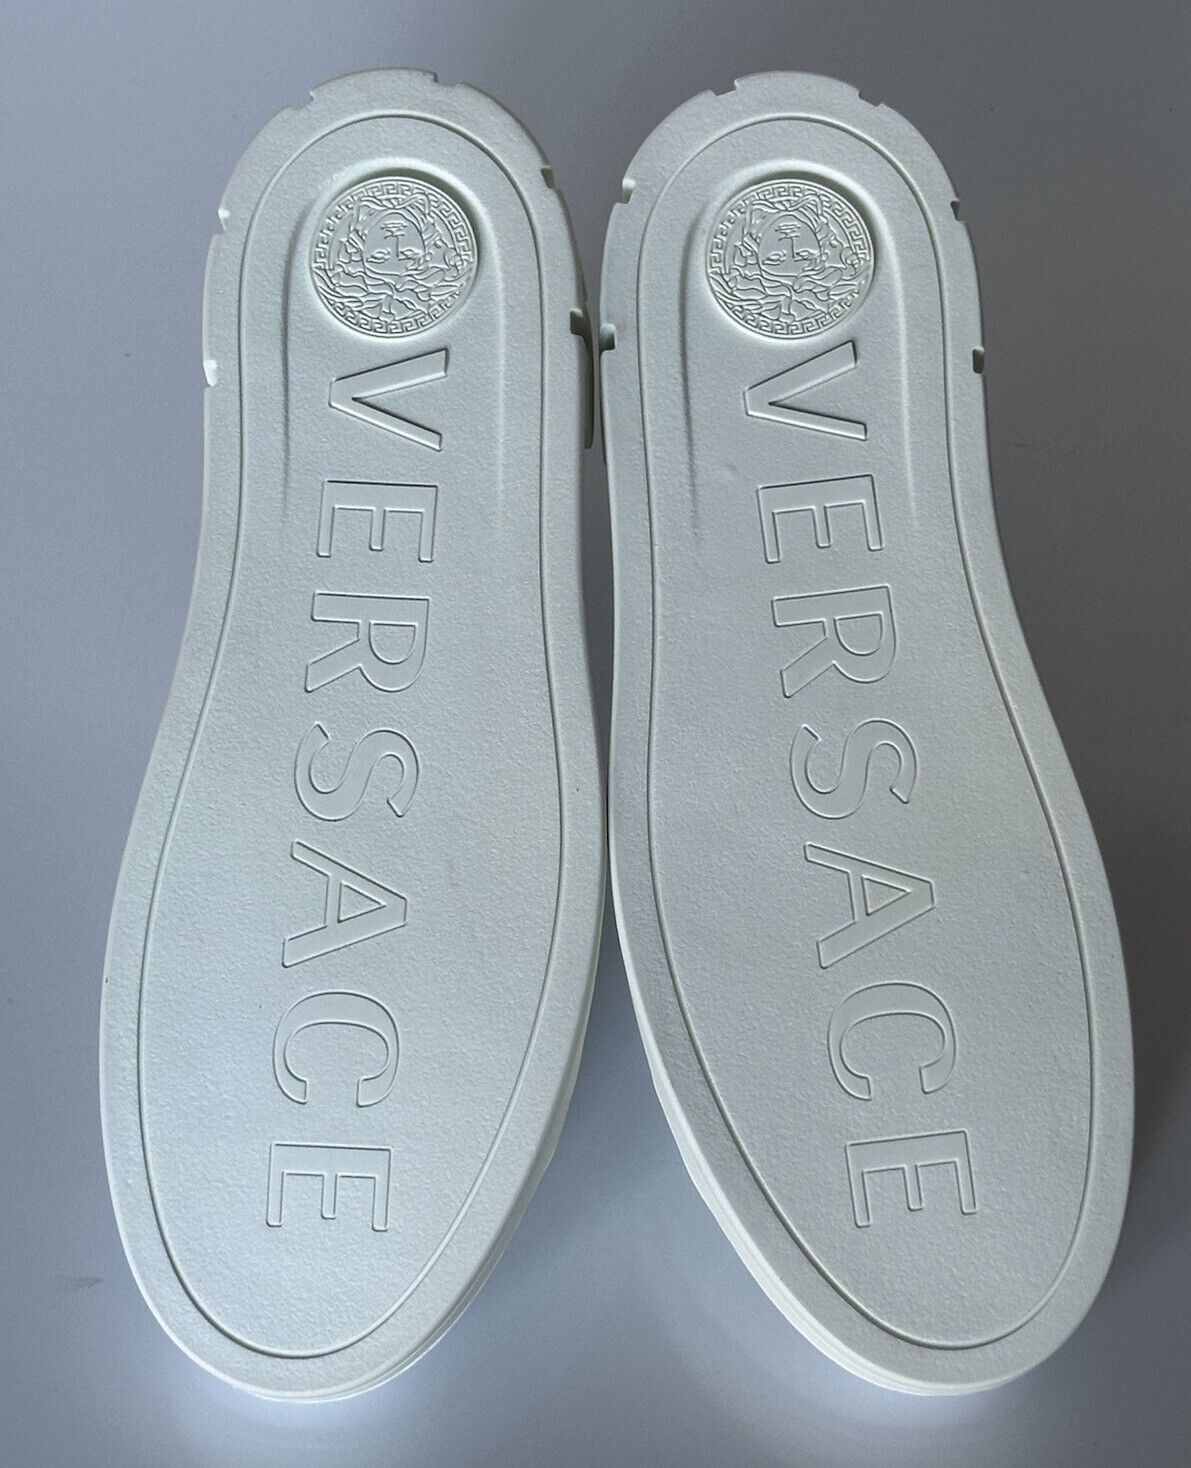 NIB 750 долларов США Versace Low Top Женские белые кожаные кроссовки 9 США (39 ЕС) 1008962 IT